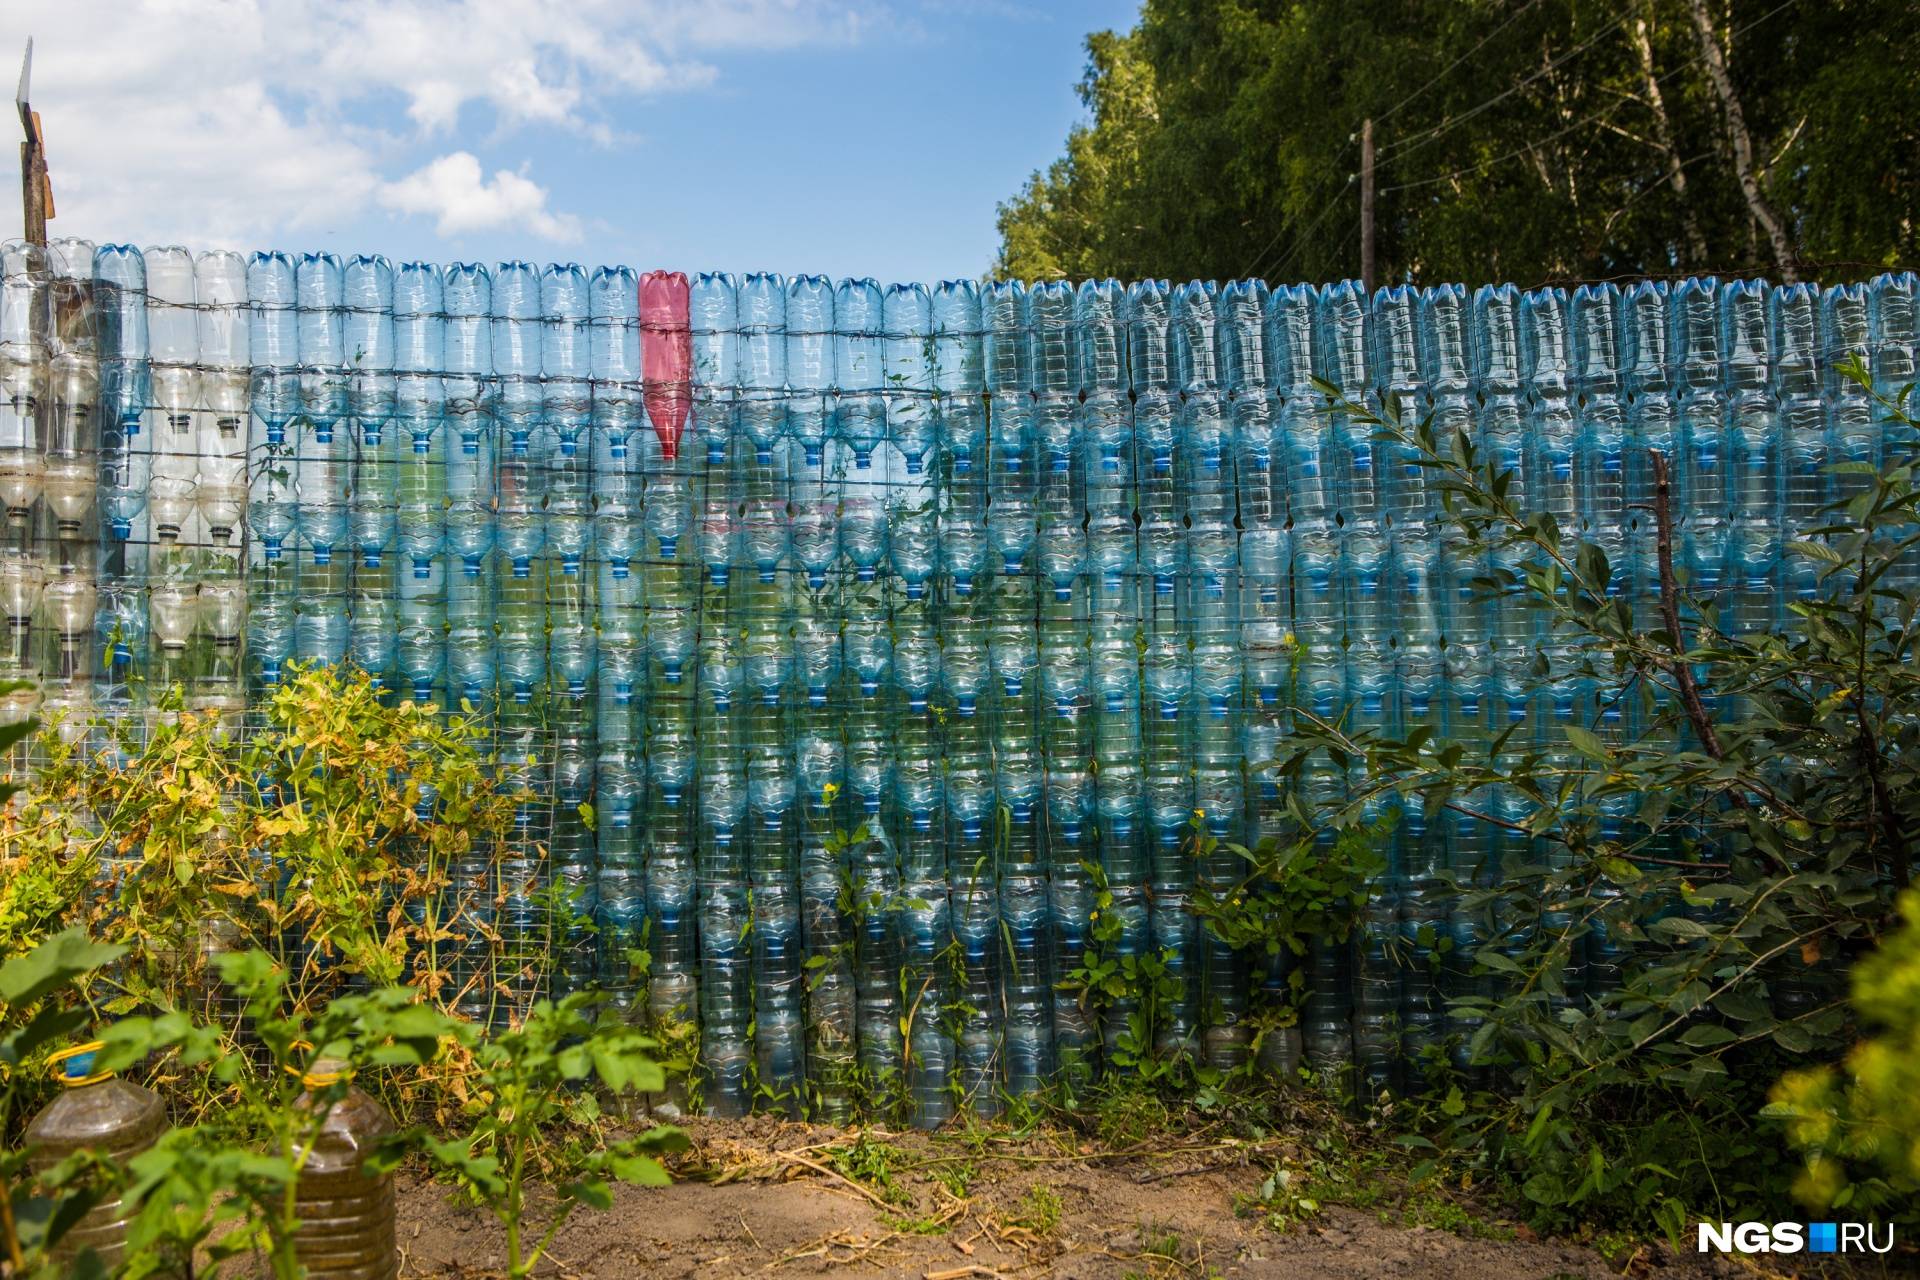 Как сделать забор из пластиковых бутылок - из каких можно построить капитальный забор: инструкция +фото и видео и сколько потребуется пластиковых бутылок для дачного забора? 